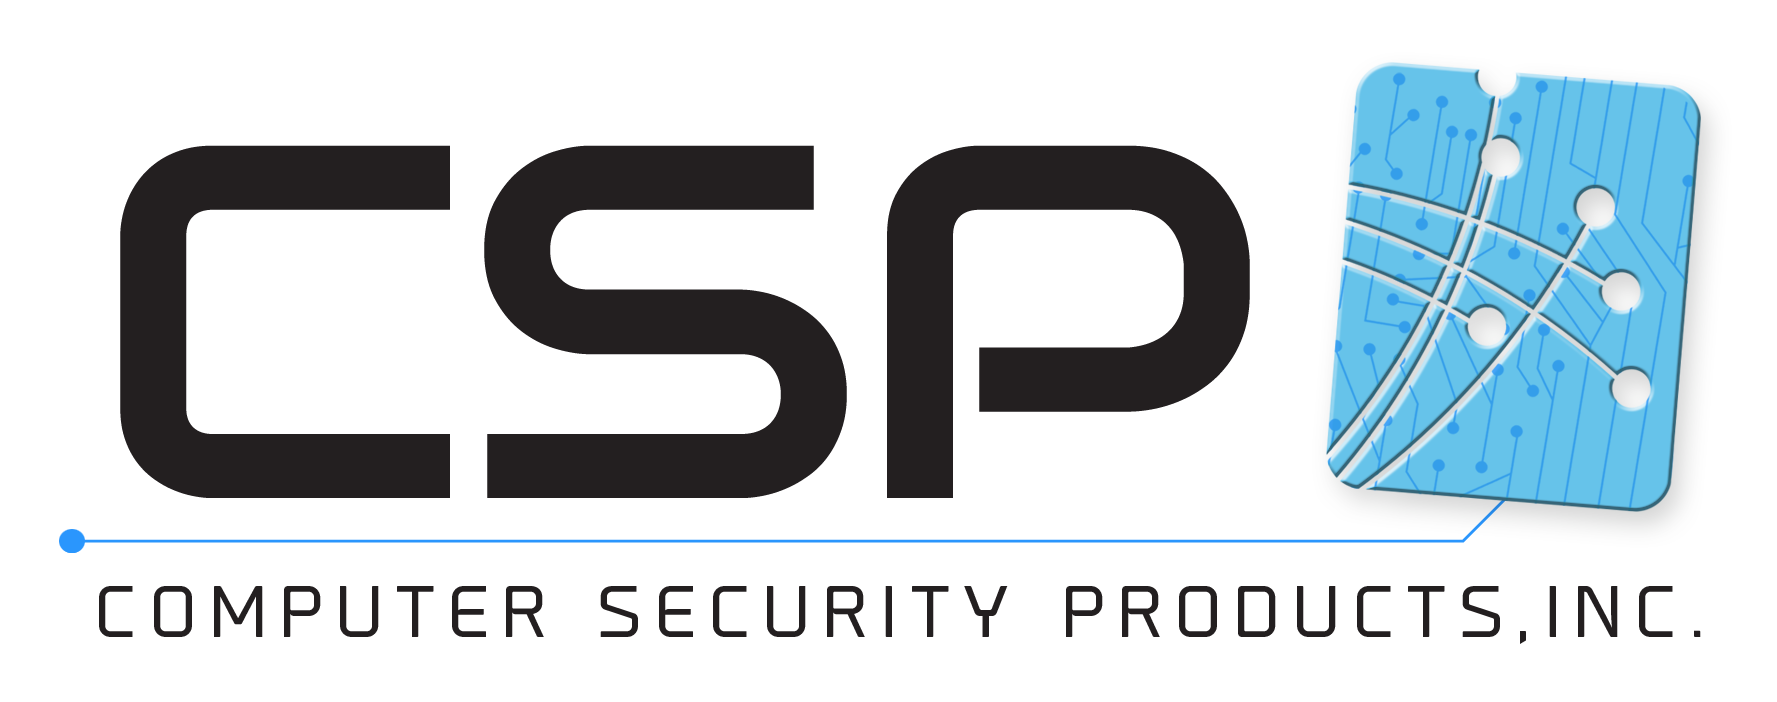 CSP Security